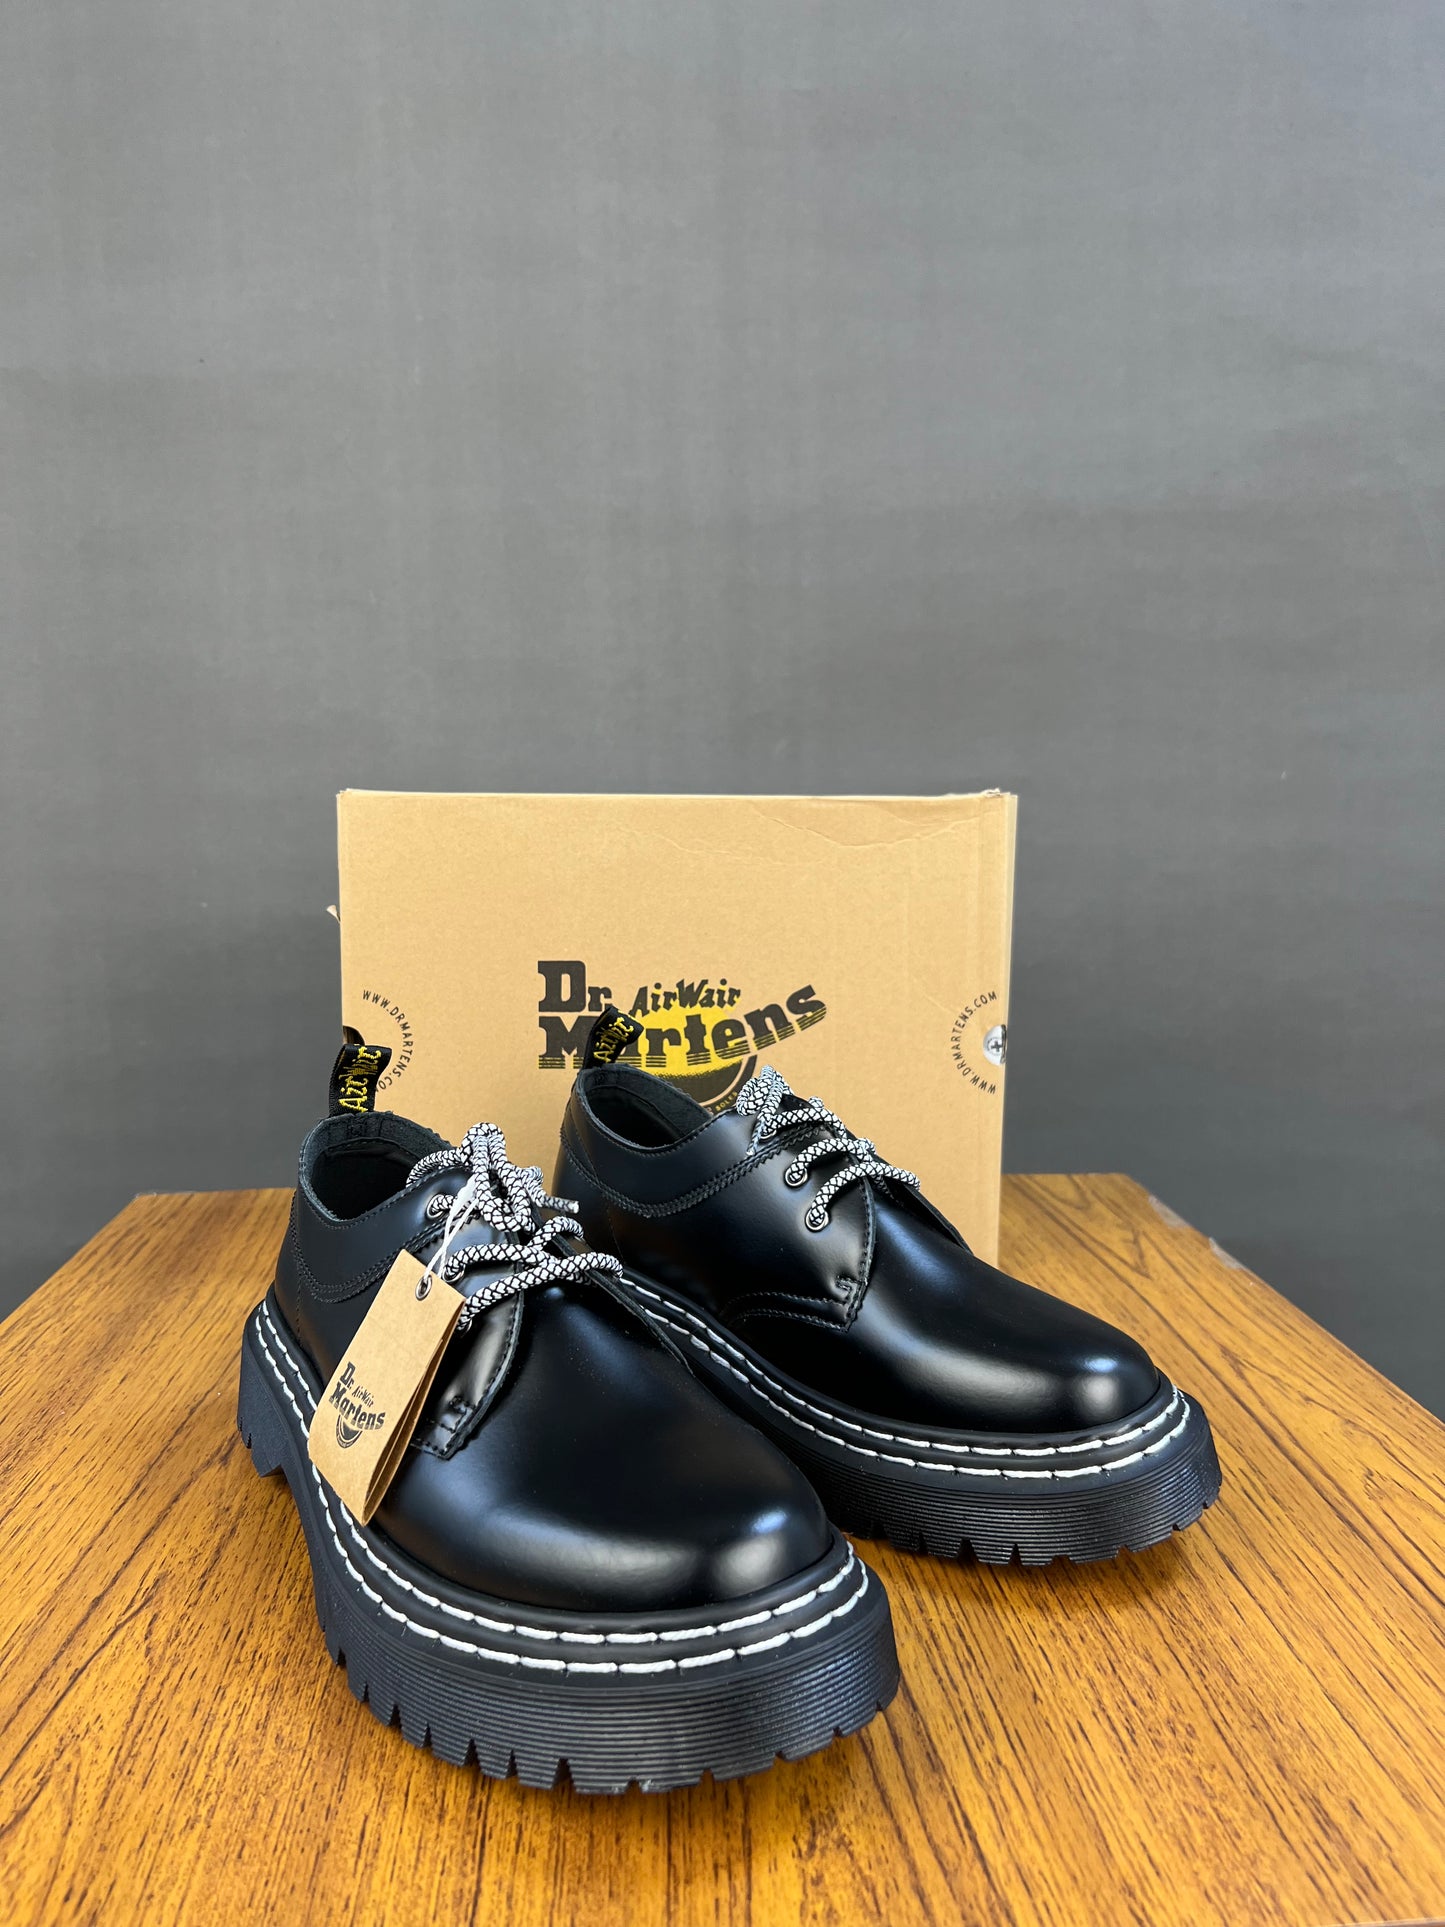 Dr martens 1461 Quad classic shoe